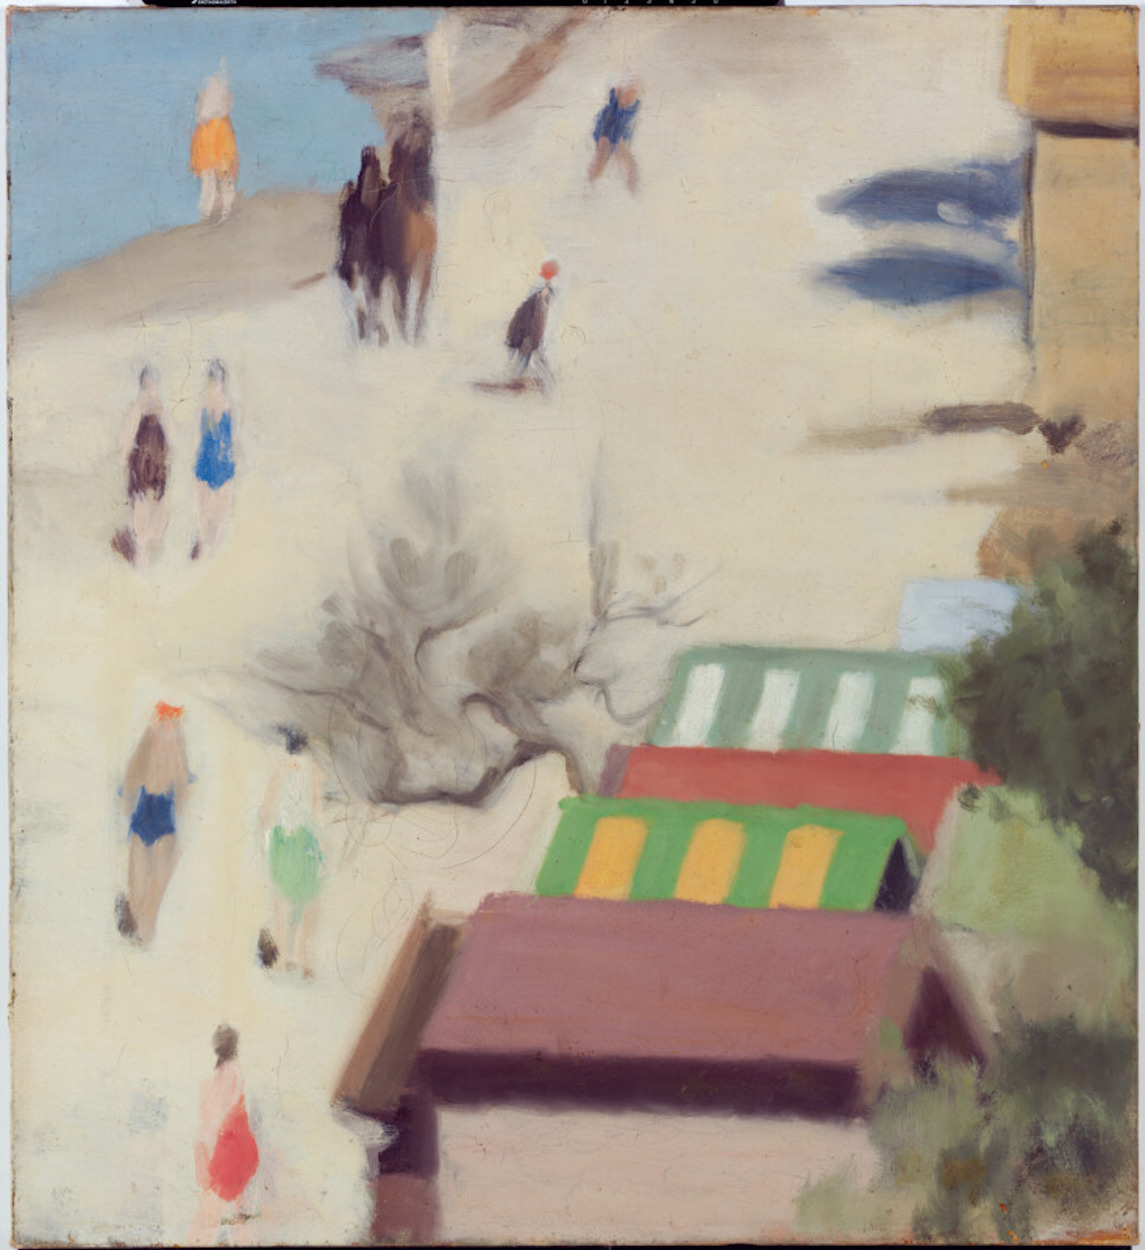 La playa de Sandringham by Clarice Beckett - c. 1933 - 50,9 x 55,8 cm Galería Nacional de Australia